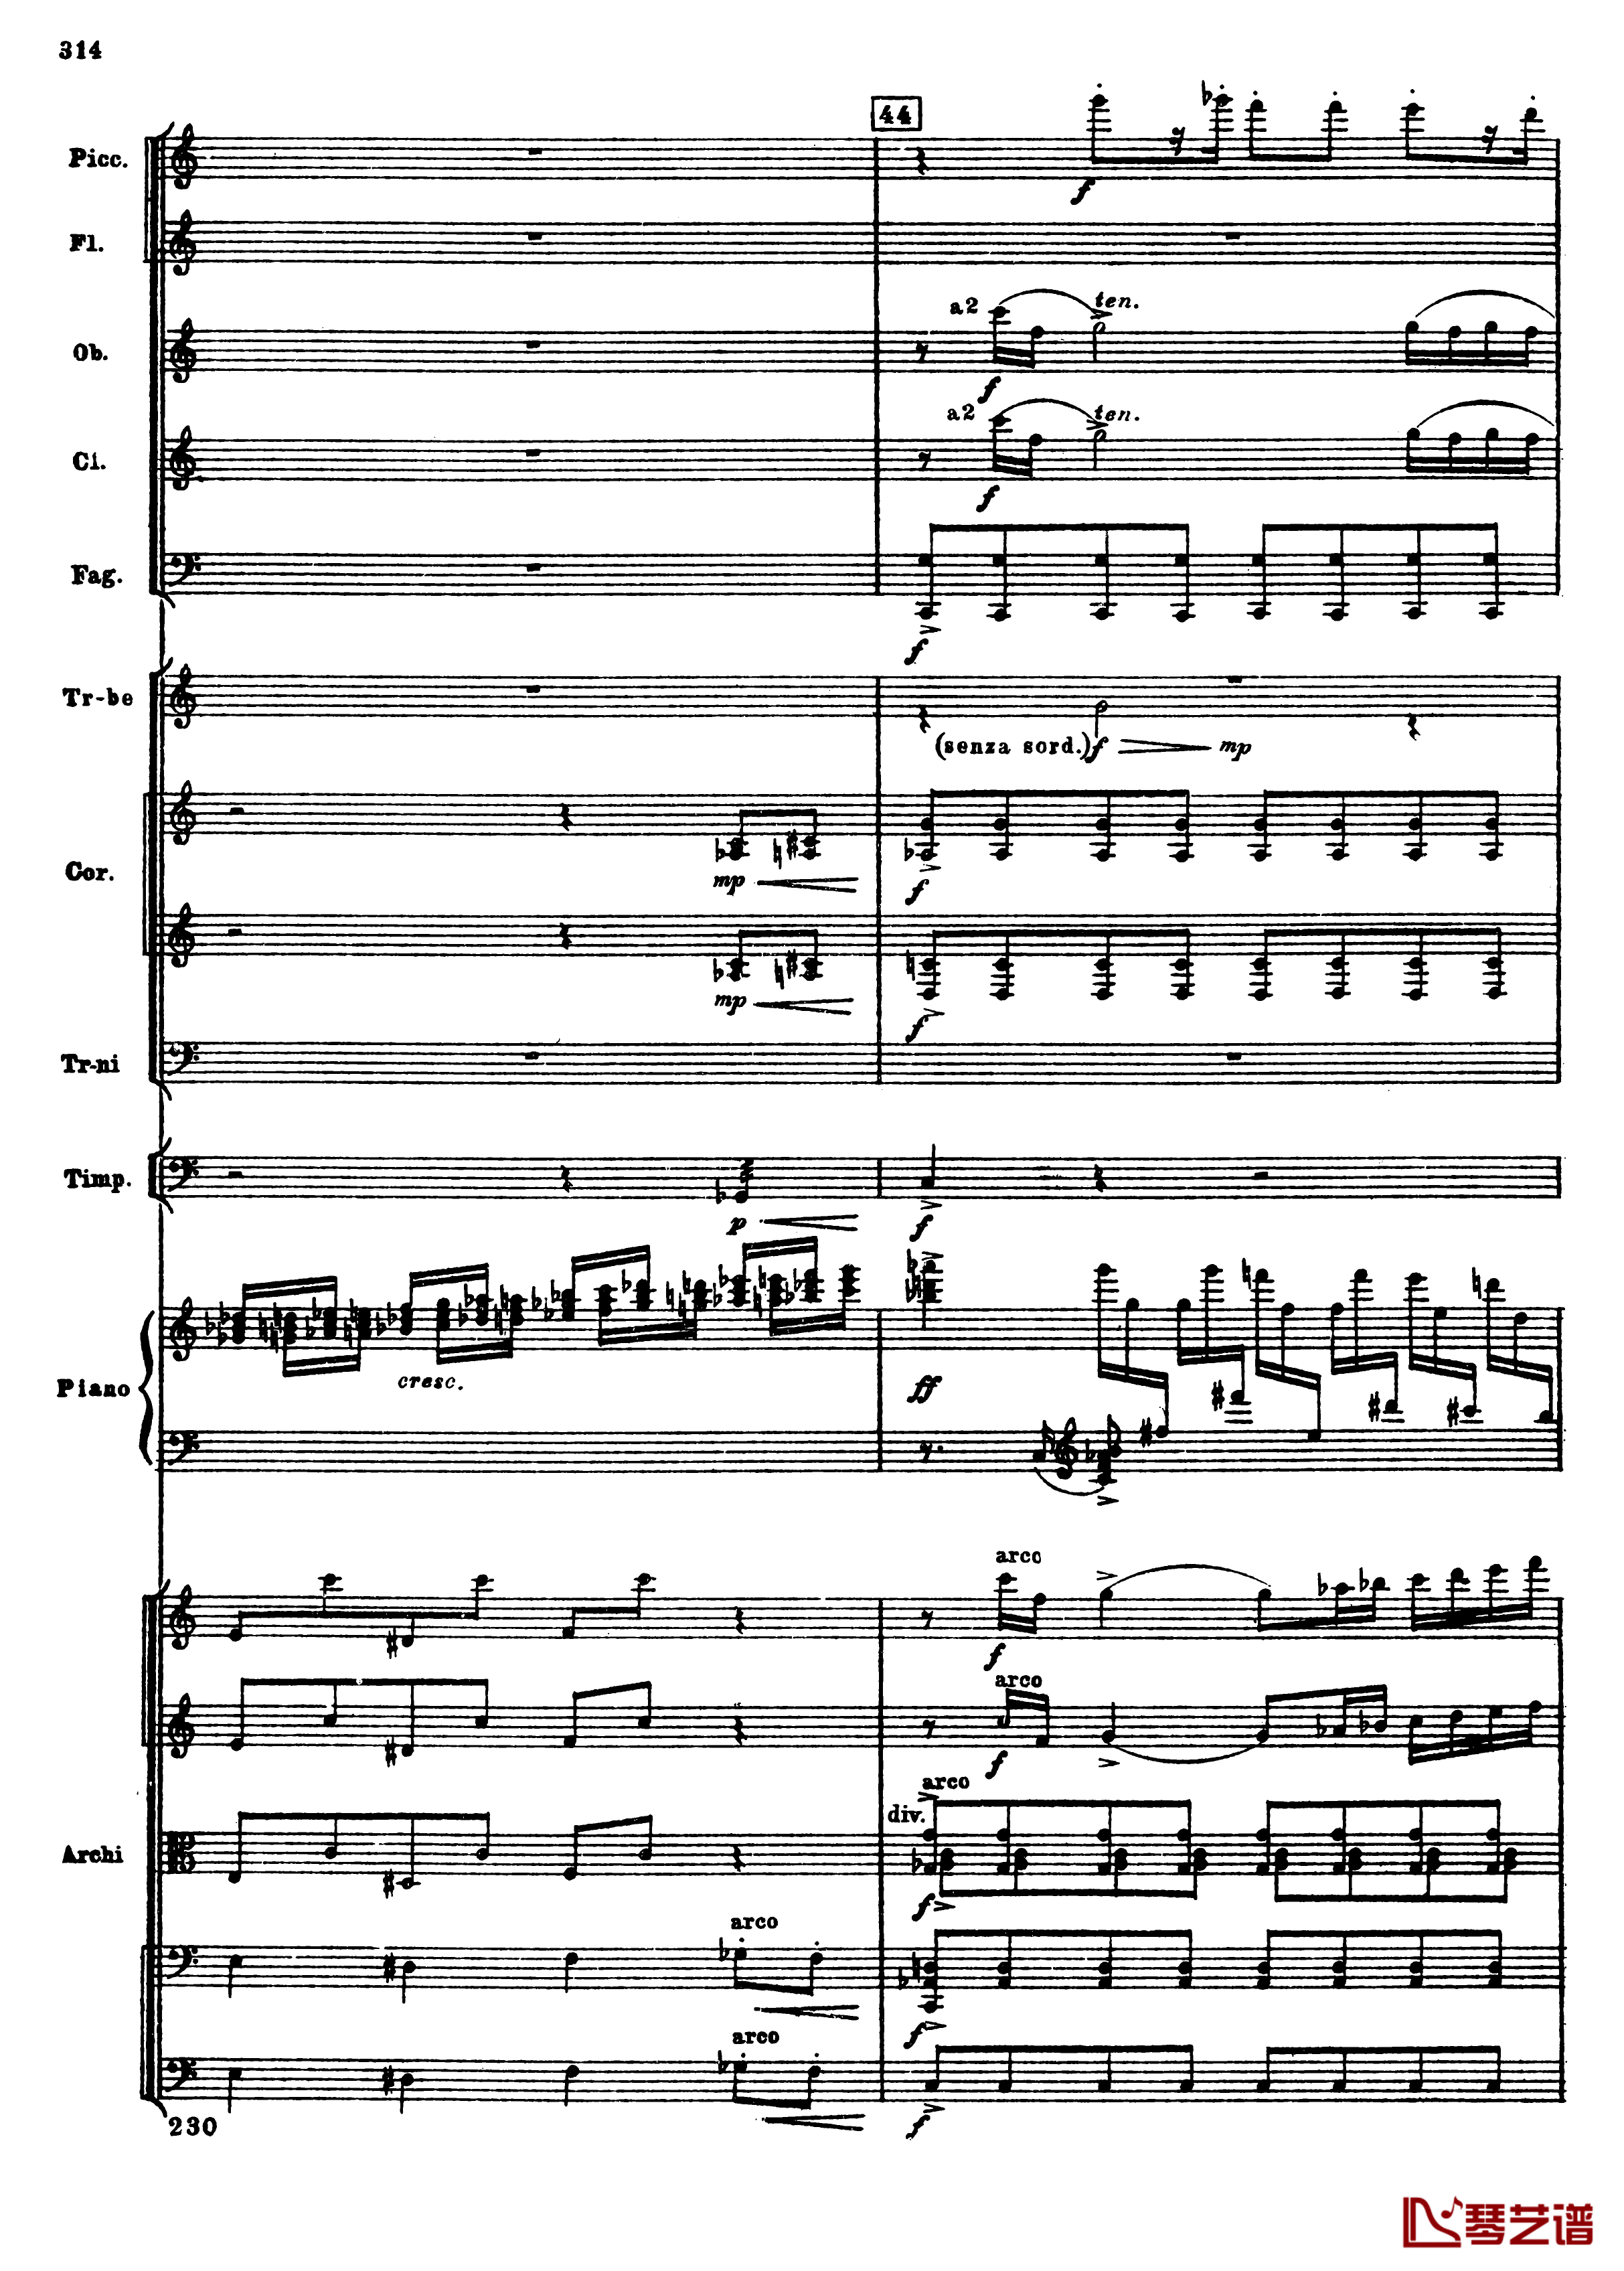 普罗科菲耶夫第三钢琴协奏曲钢琴谱-总谱-普罗科非耶夫46